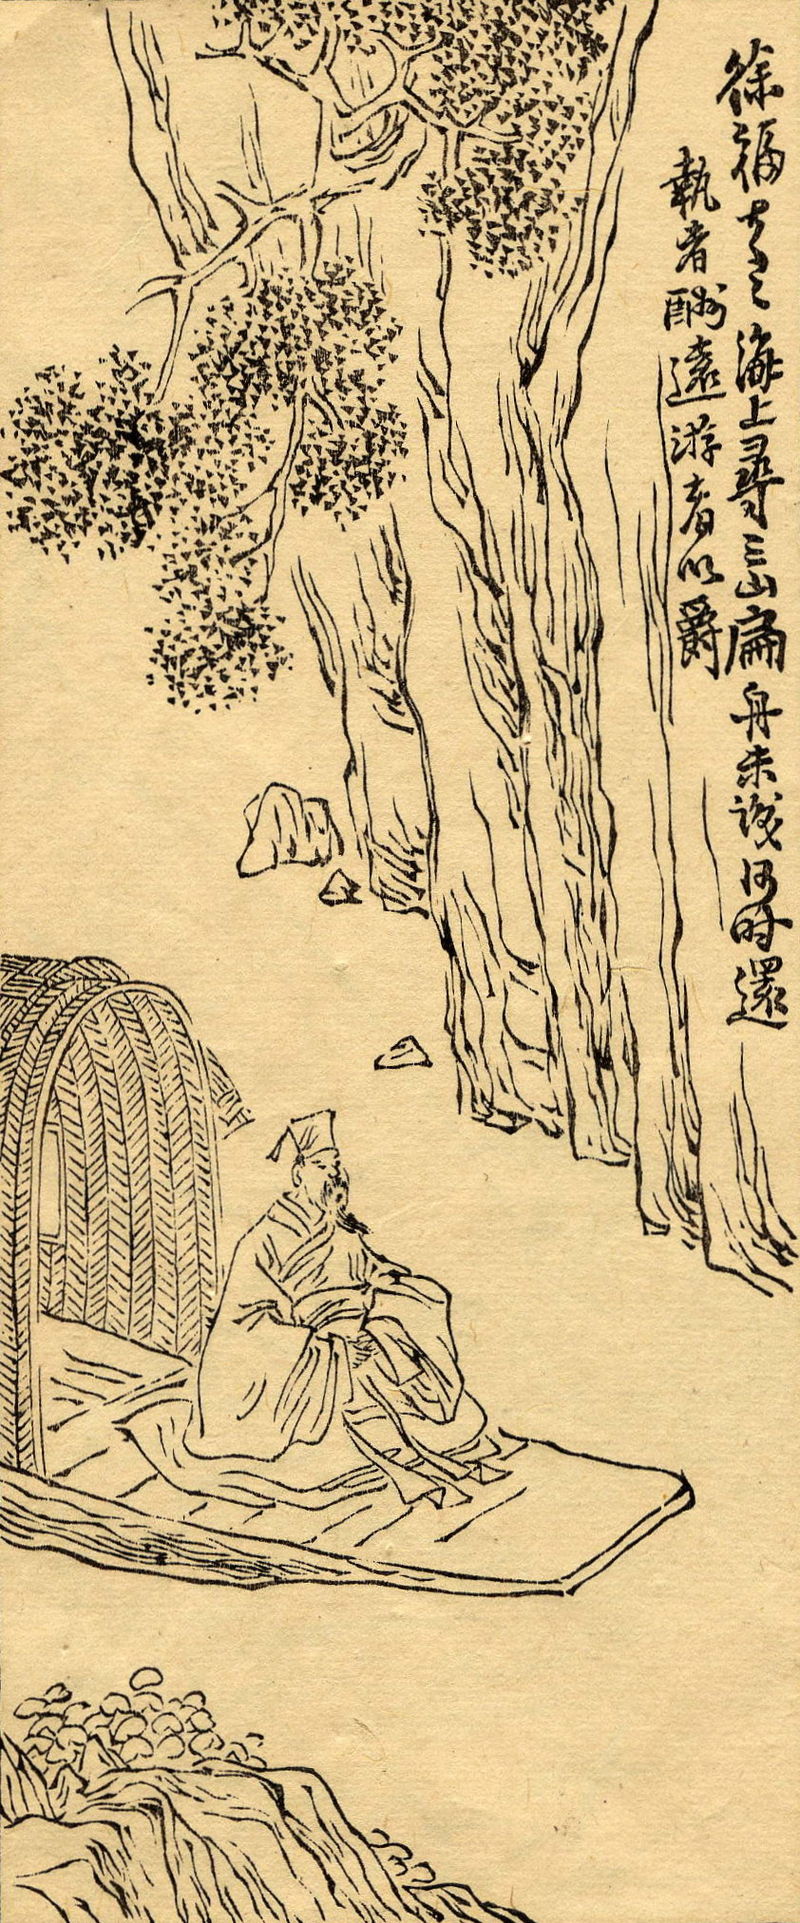 任熊『列仙酒牌』より 船に乗る徐福（Wikipediaより20220215ダウンロード）の画像。